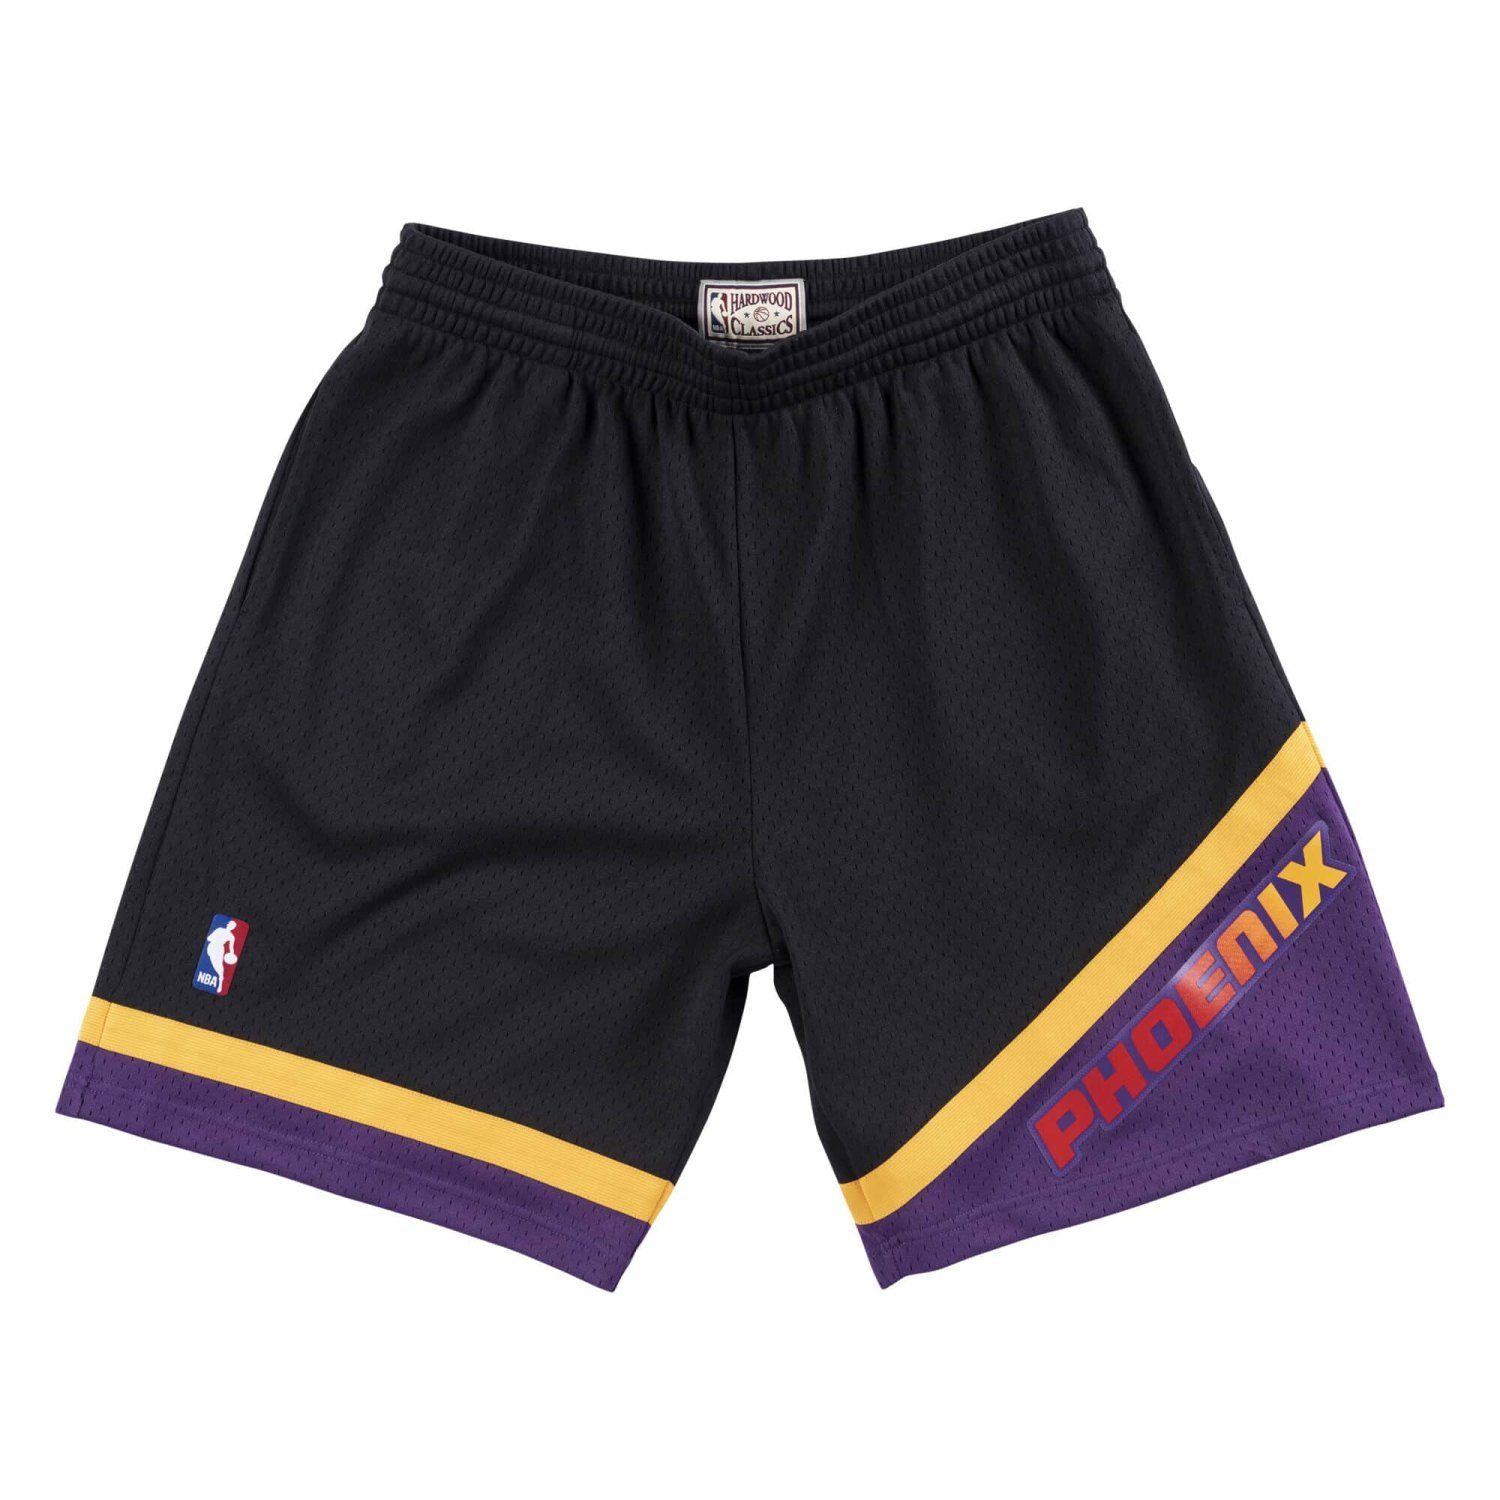 Mitchell & Ness Shorts NBA Swingman Phoenix Suns Alternate 199900 | Shorts